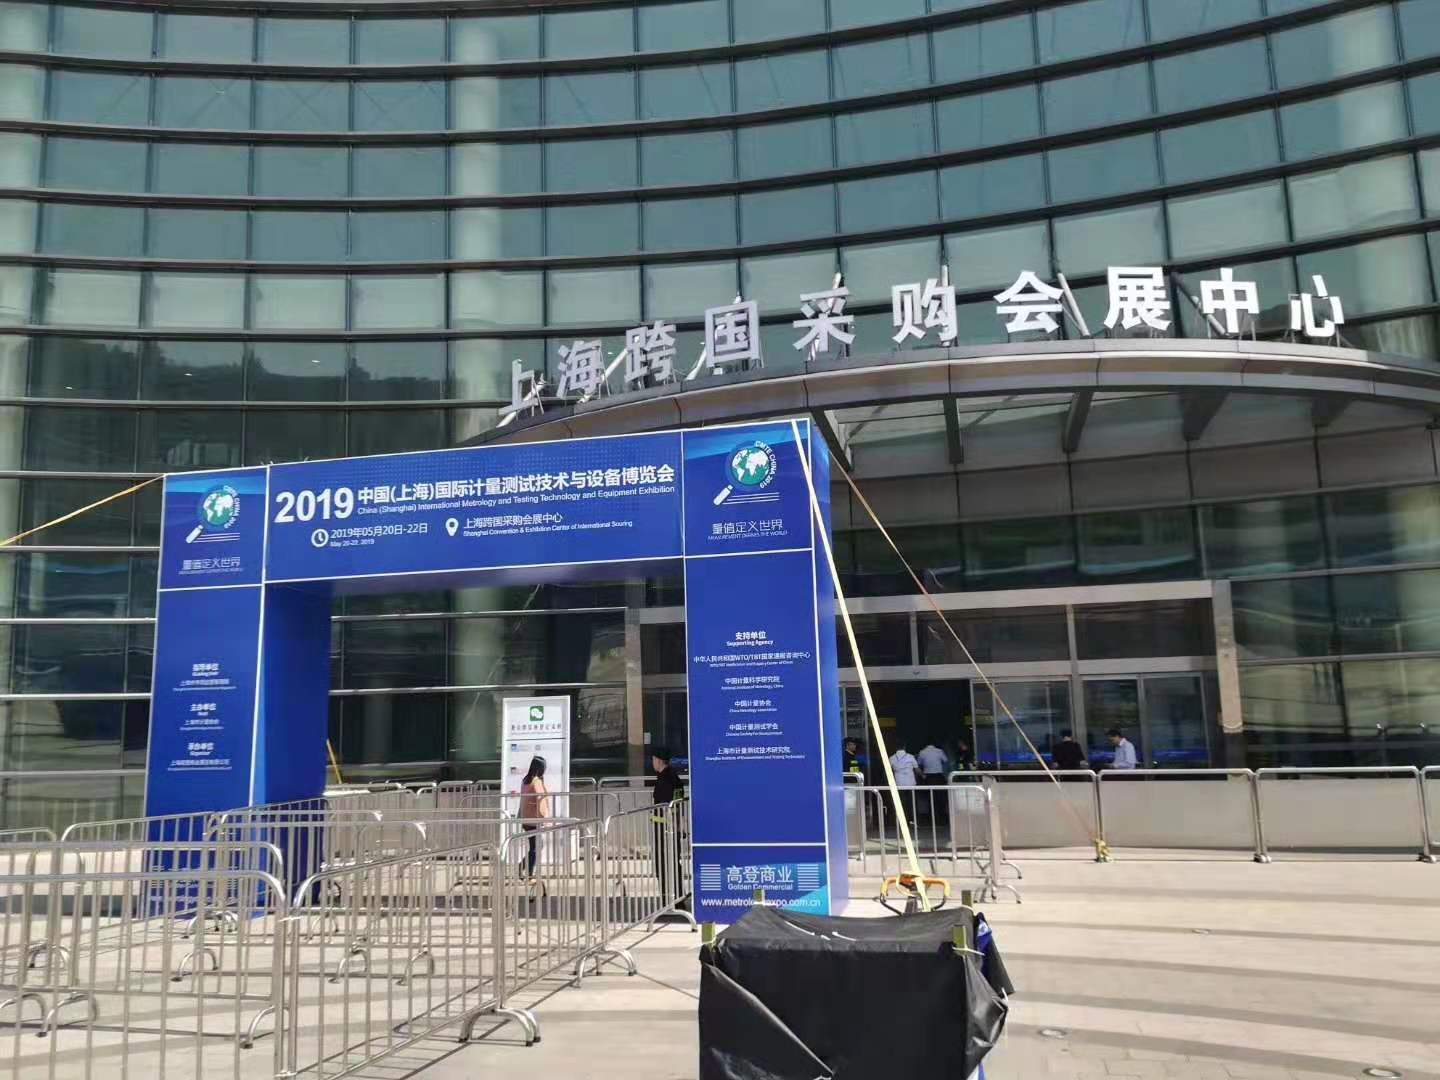 尼科仪器参加首届计量行业展（上海）